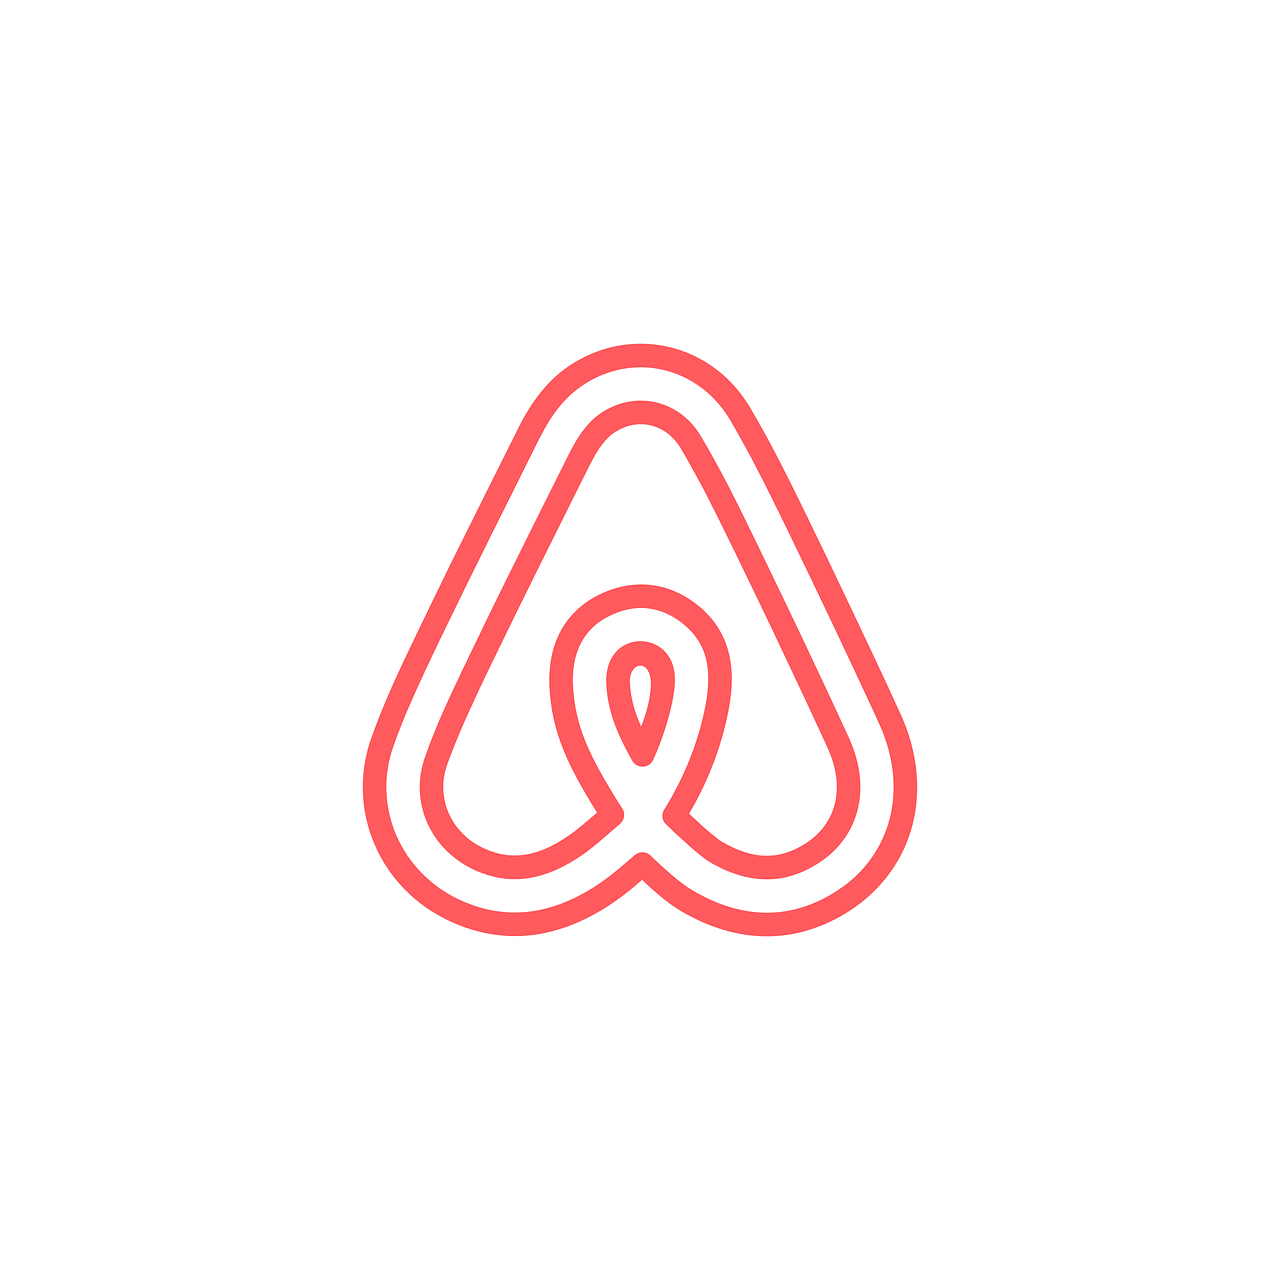 Descubriendo cómo funciona Airbnb paso a paso